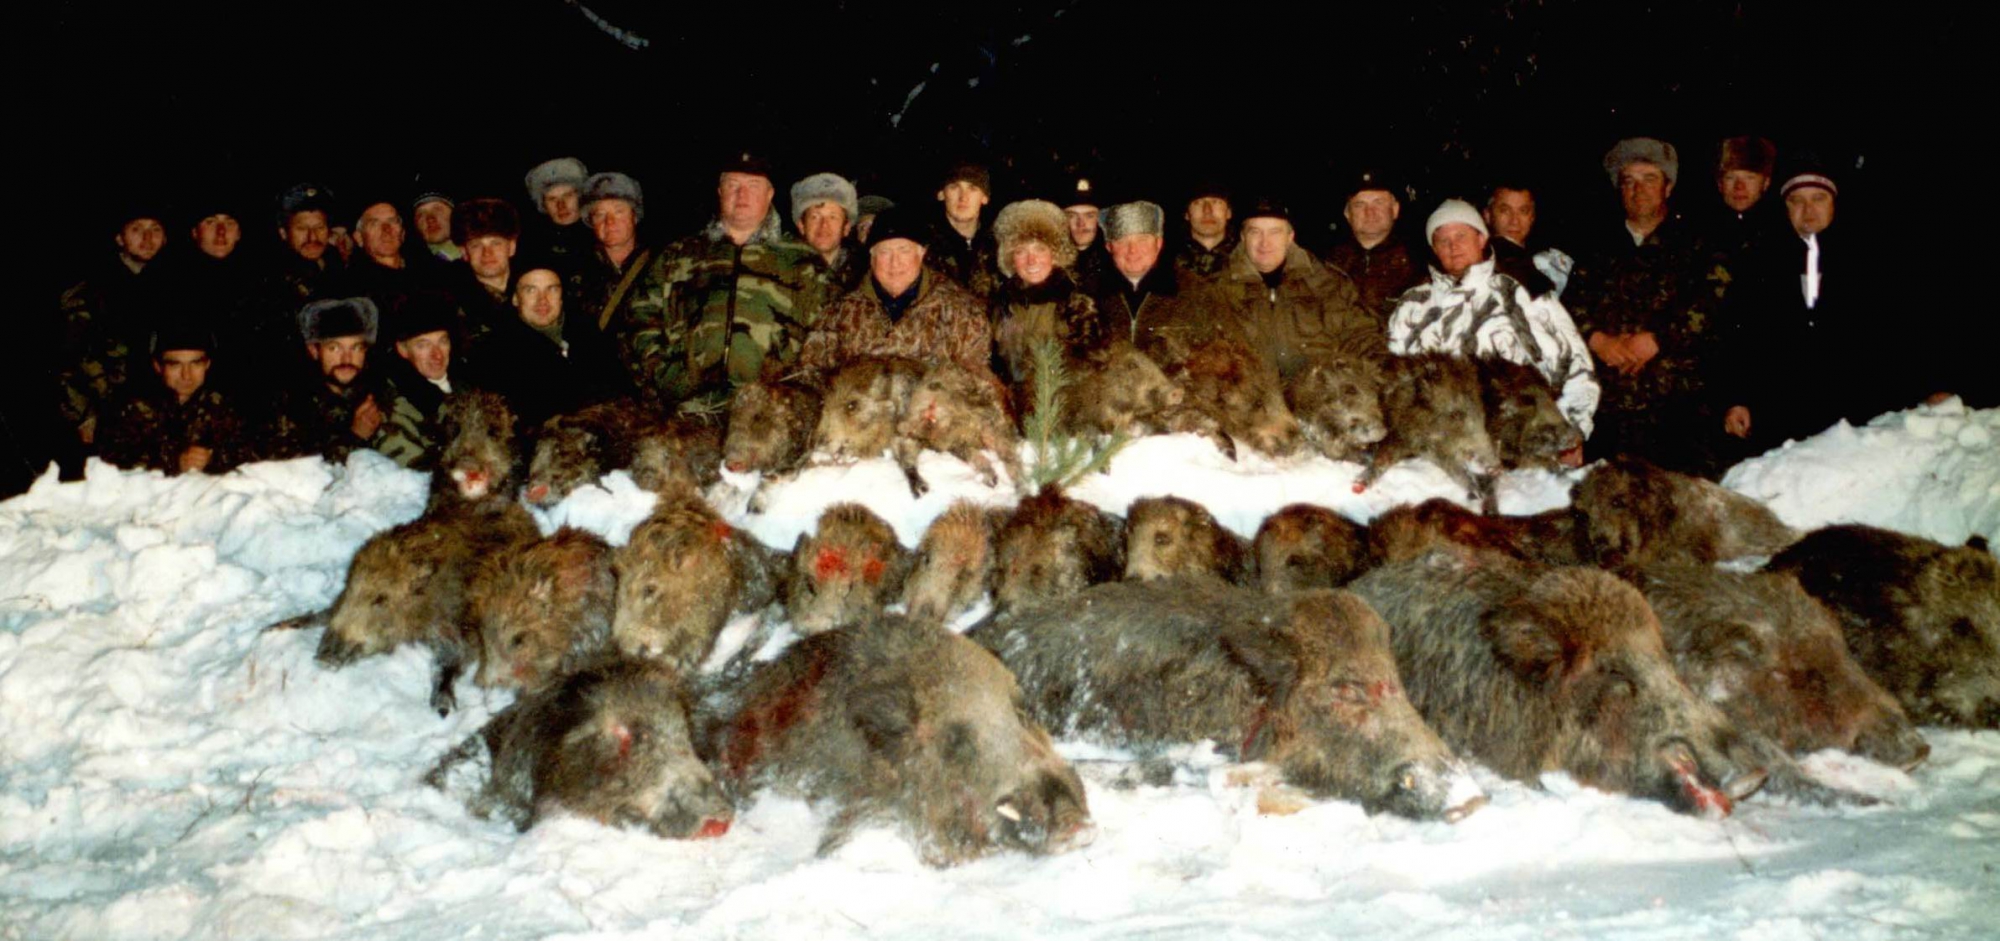 Убитые животные охотниками